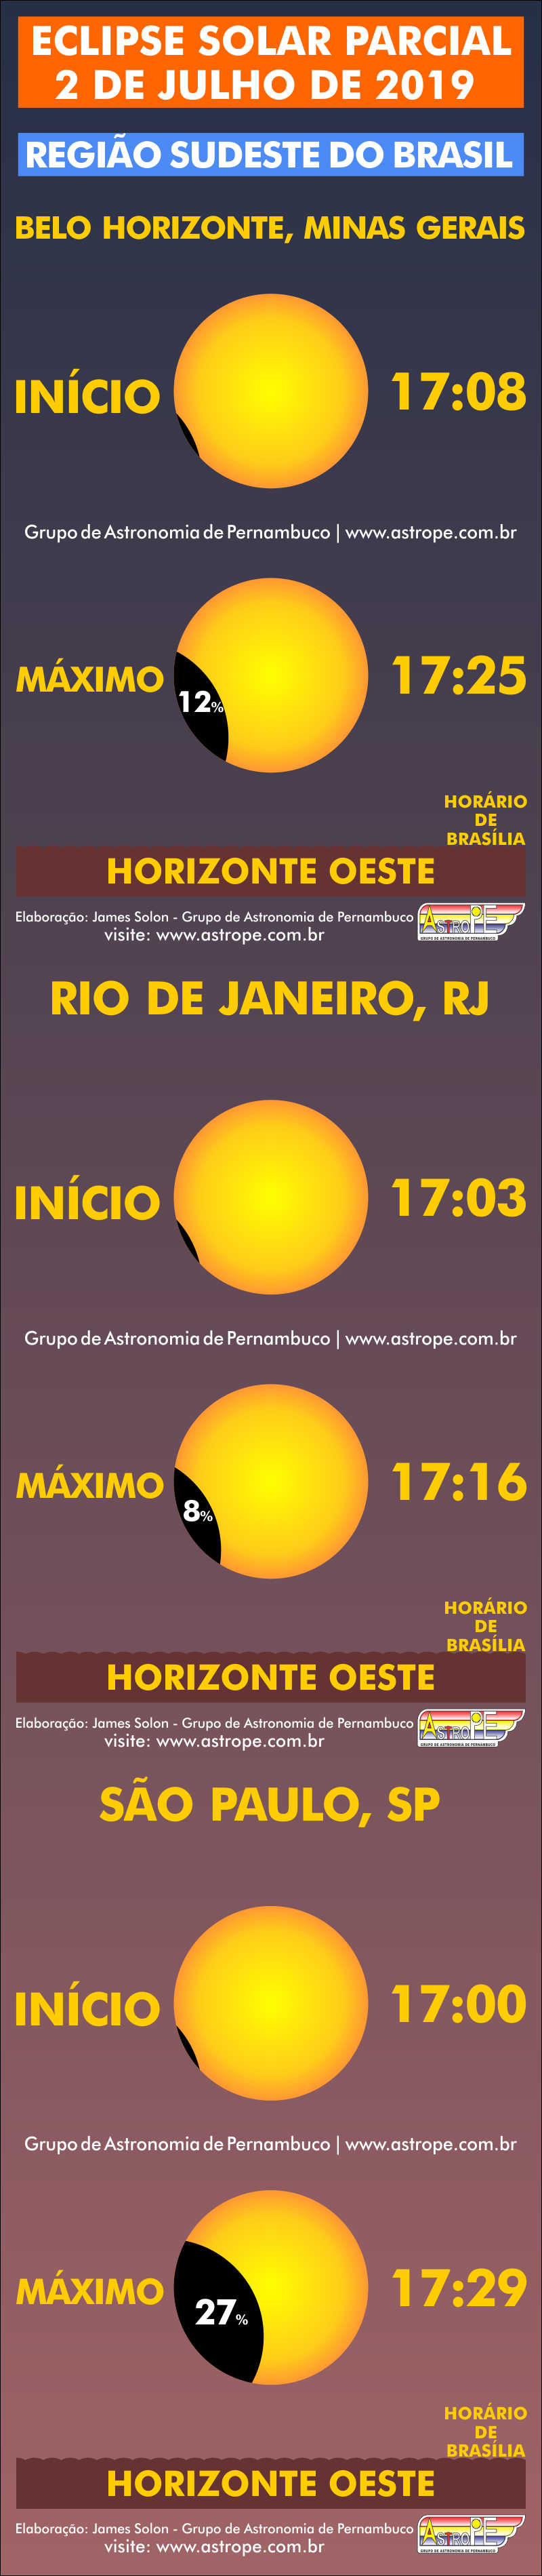 Horários do Eclipse Solar Parcial de 2 de julho de 2019 no Brasil na Região Sudeste. Crédito: AstroPE.